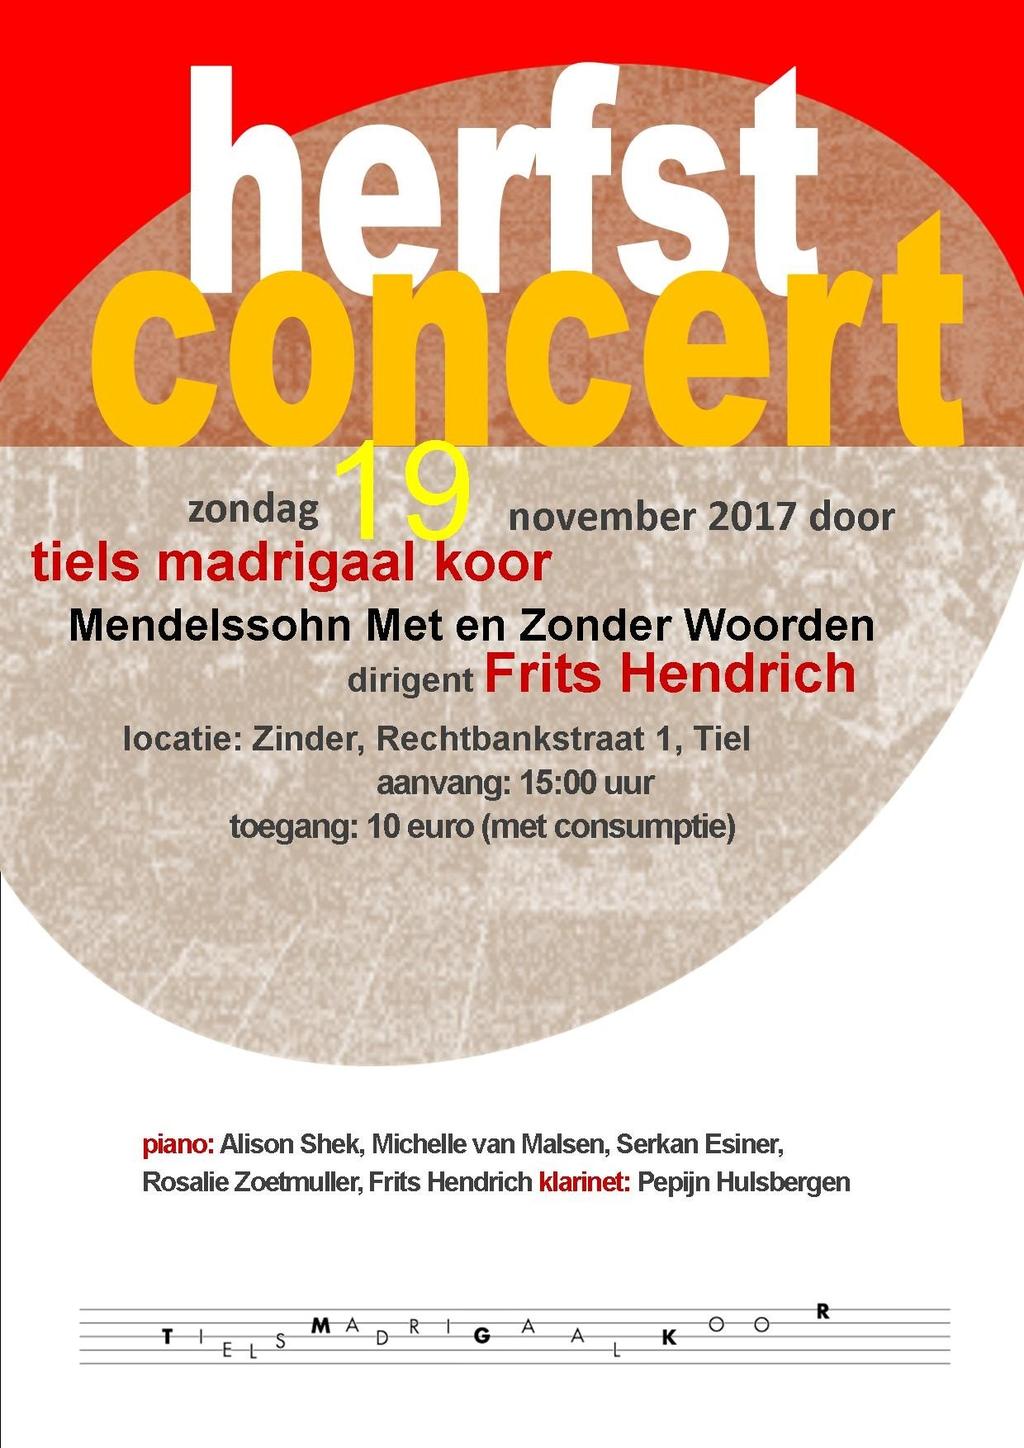 We bereidden enkele liederen van Mendelssohn voor, en enkele pianisten in opleiding aan het Tilburgs conservatorium wilden graag enkele Lieder ohne Worter spelen.